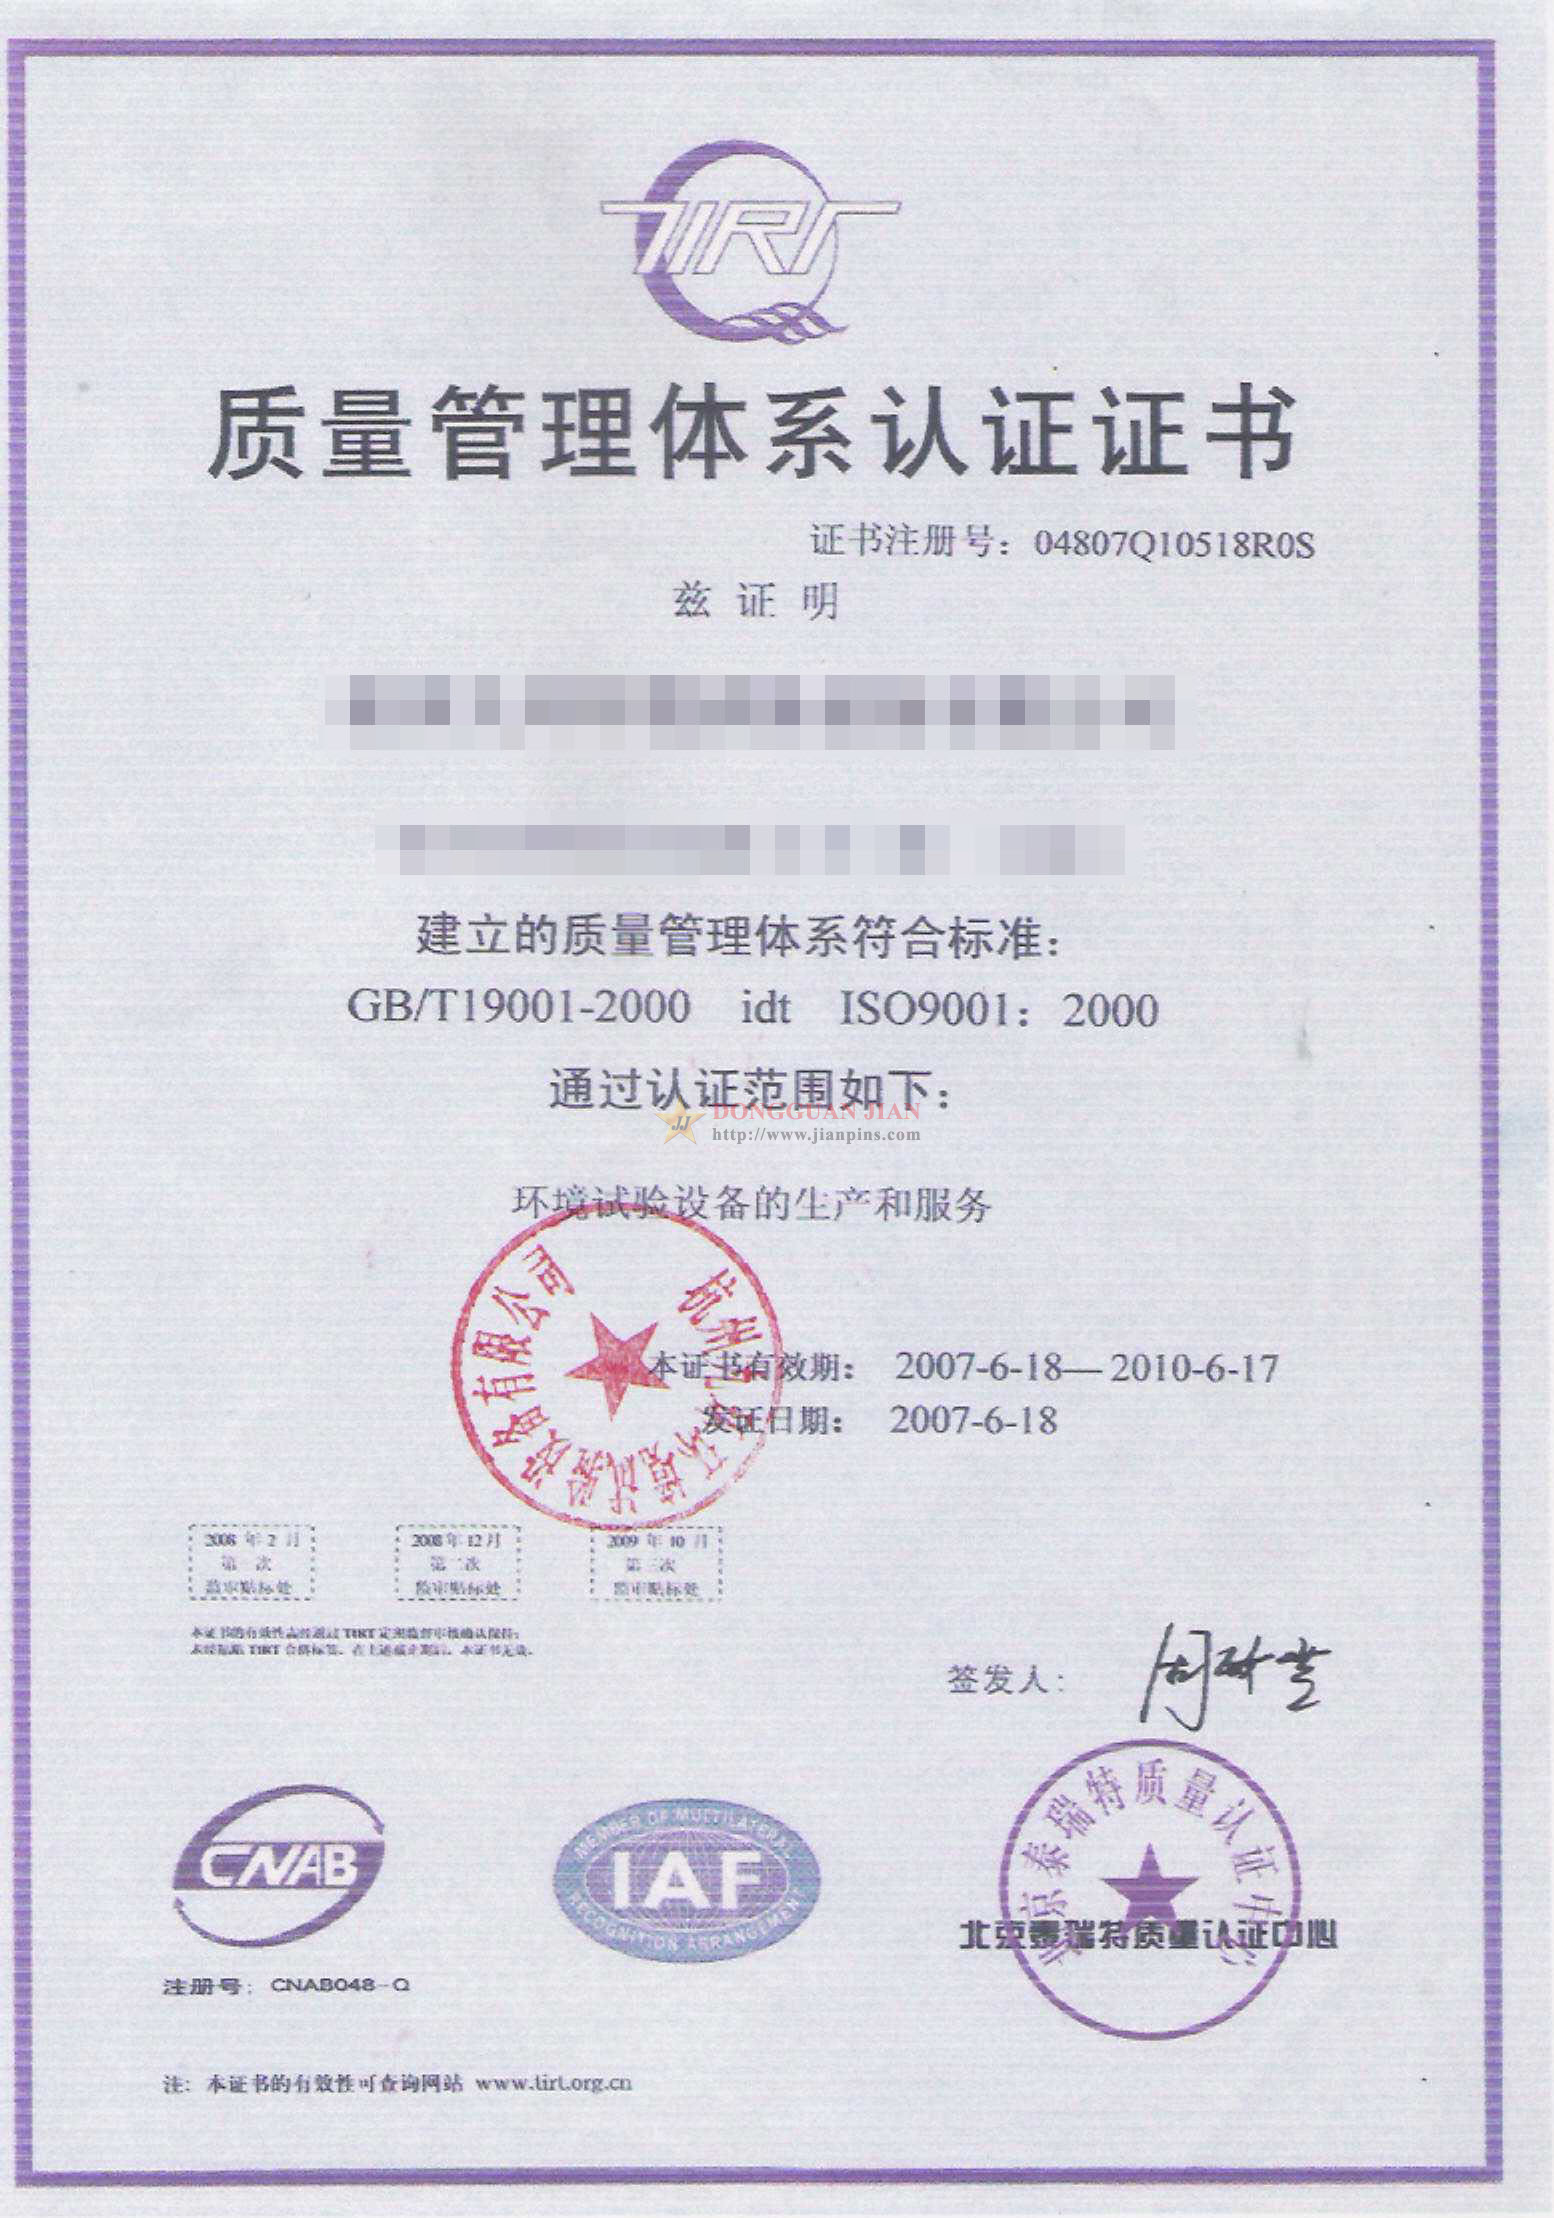 Certificatn6